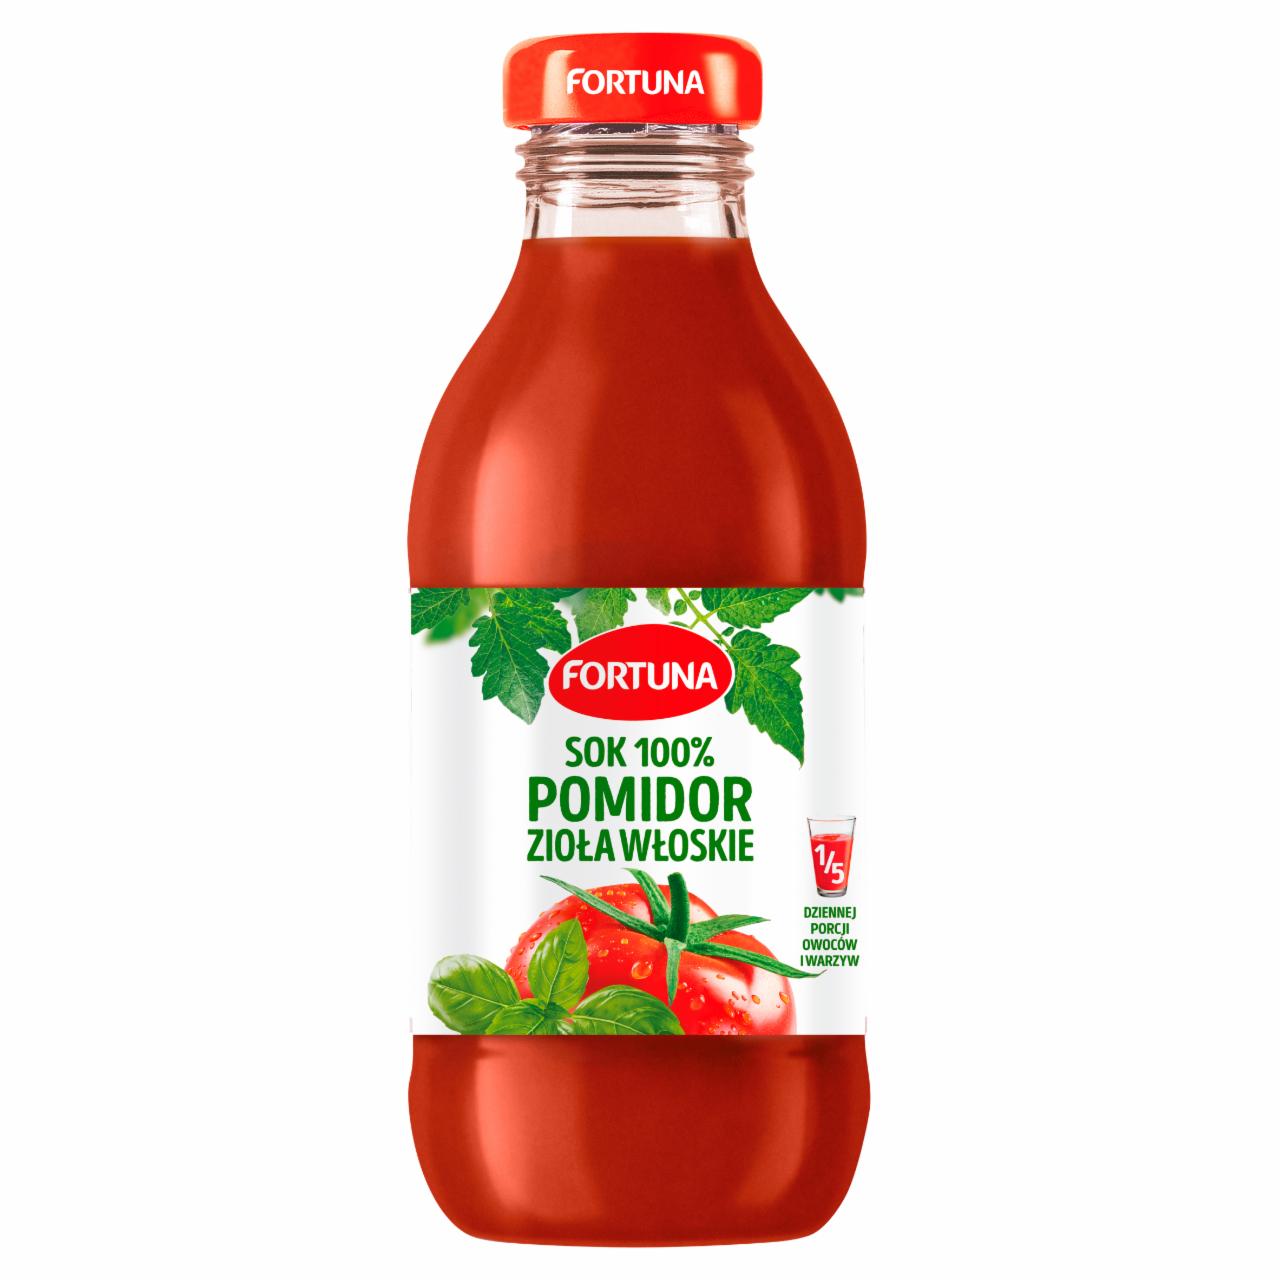 Zdjęcia - Fortuna Sok 100% pomidor zioła włoskie 300 ml